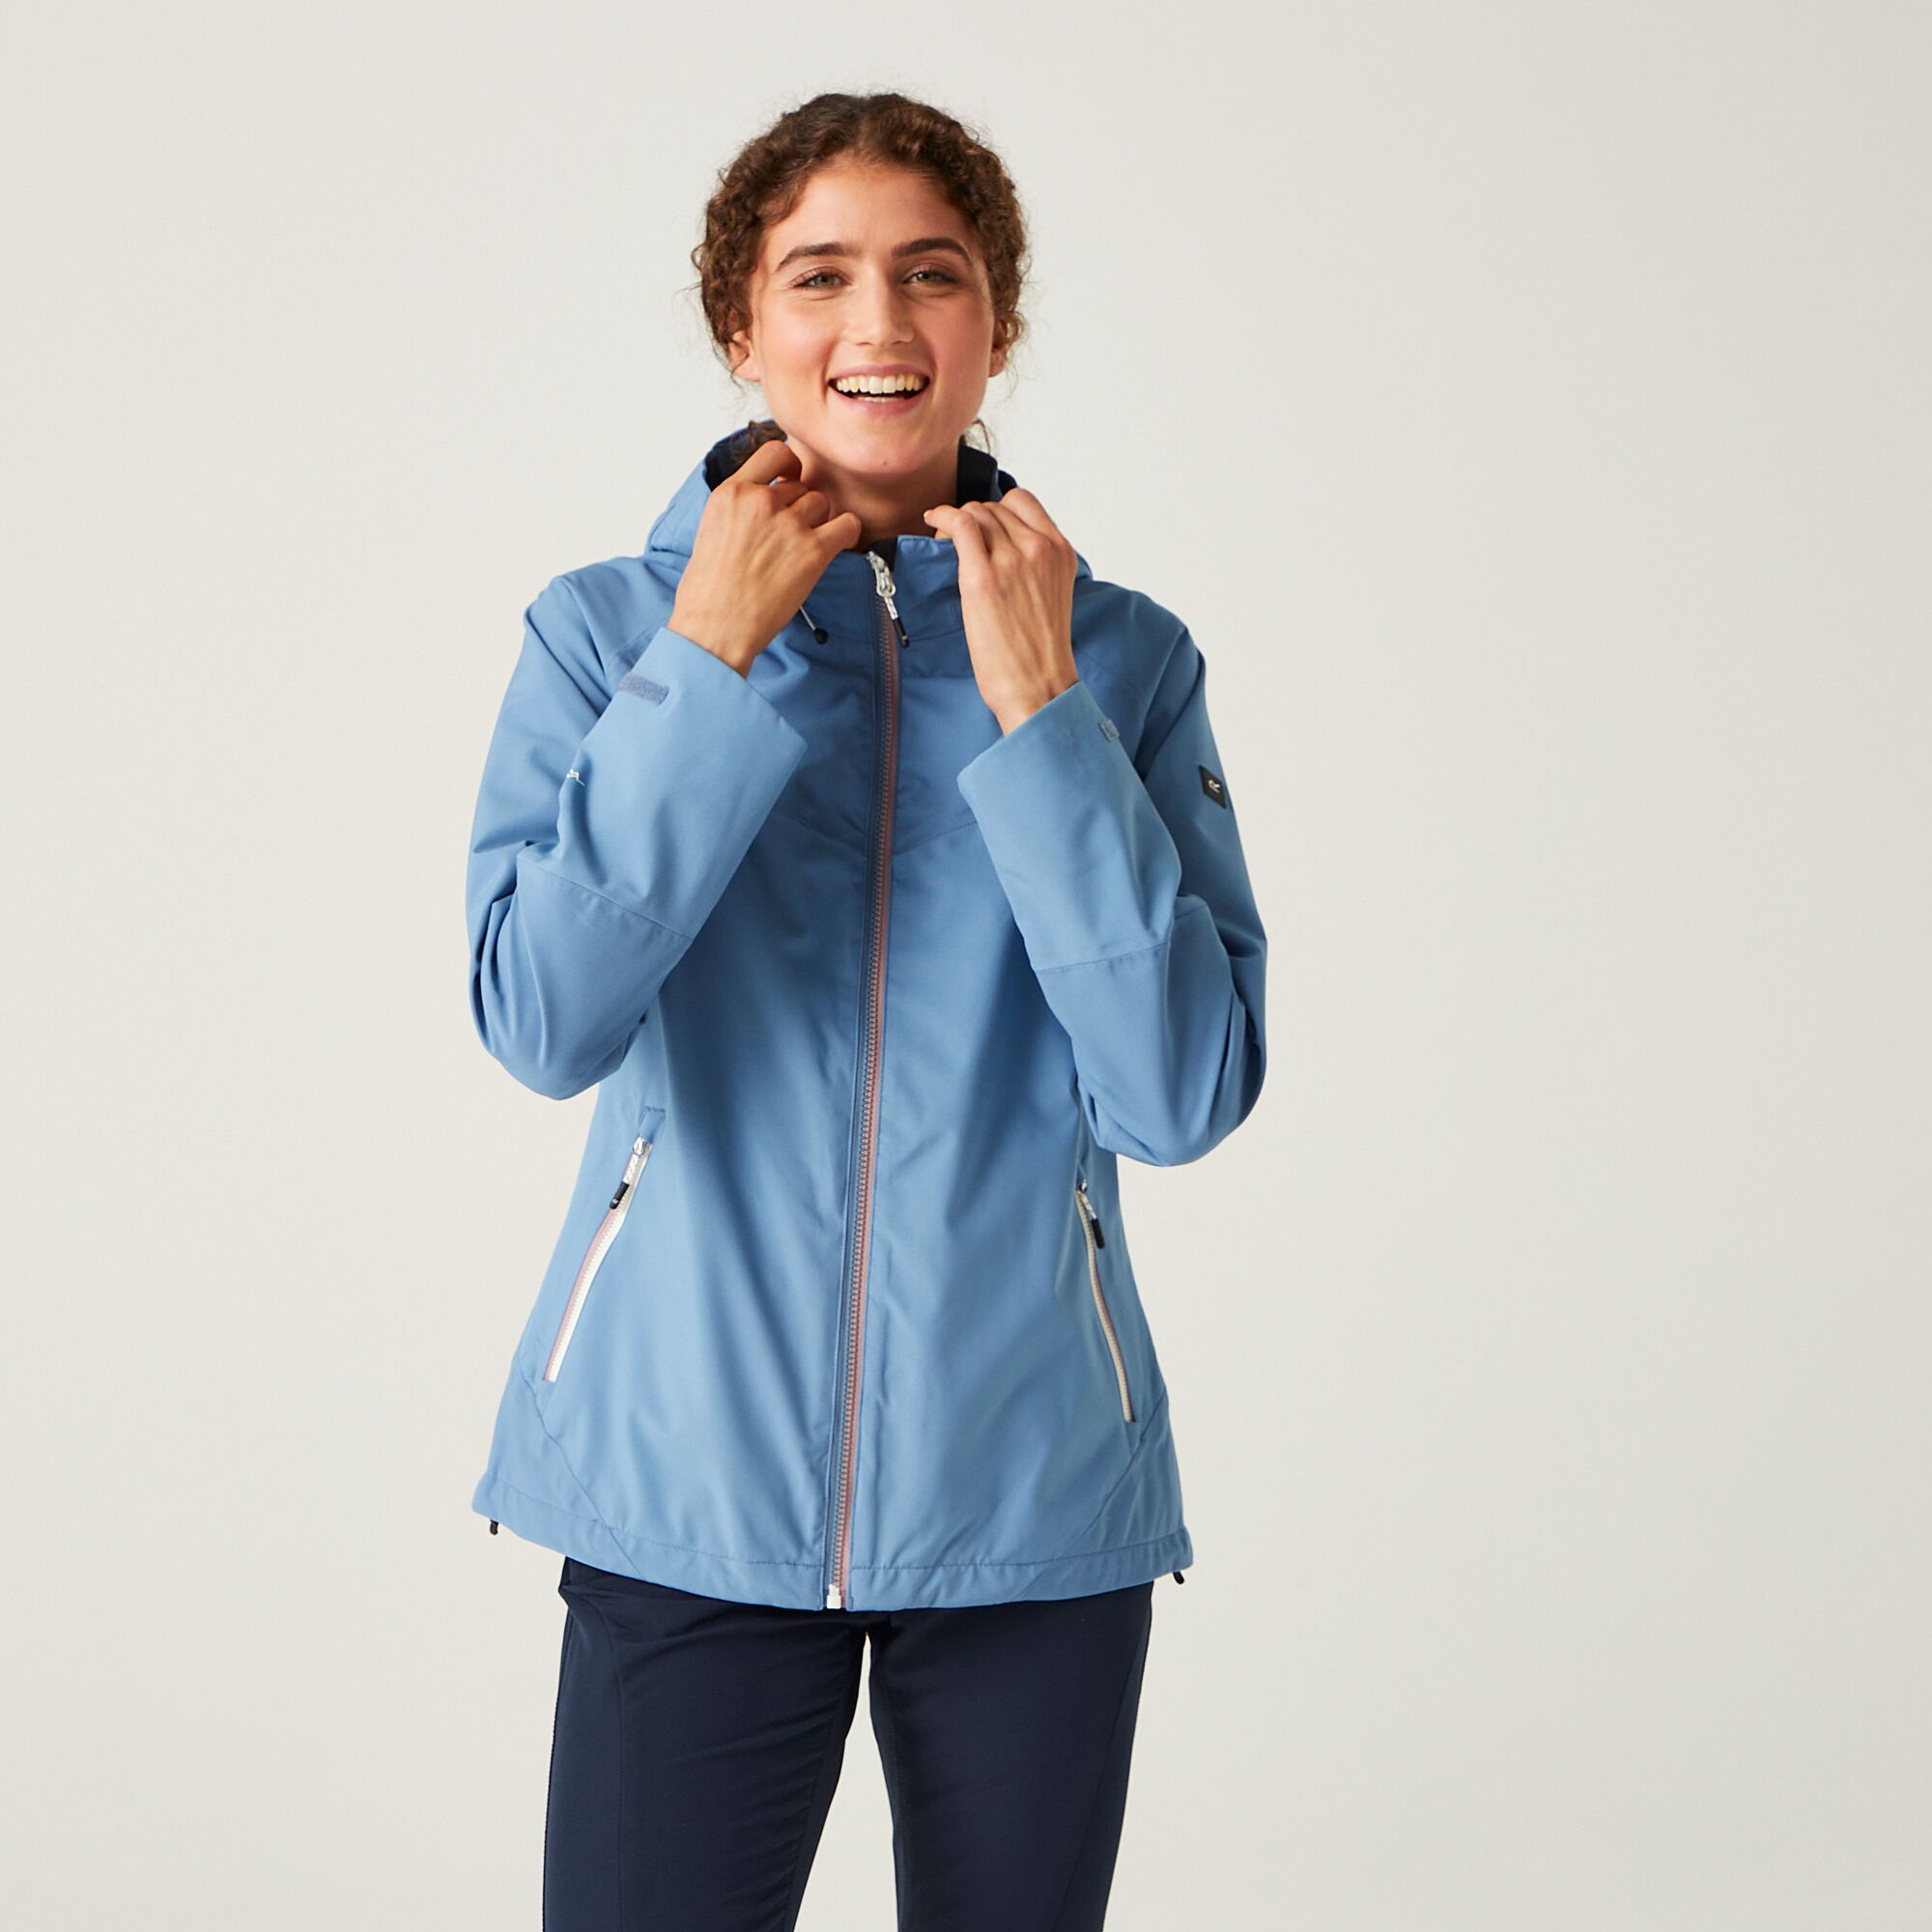 Regatta Bosfield II Wasserdichte Jacke für Damen Blau, Größe: 46 product